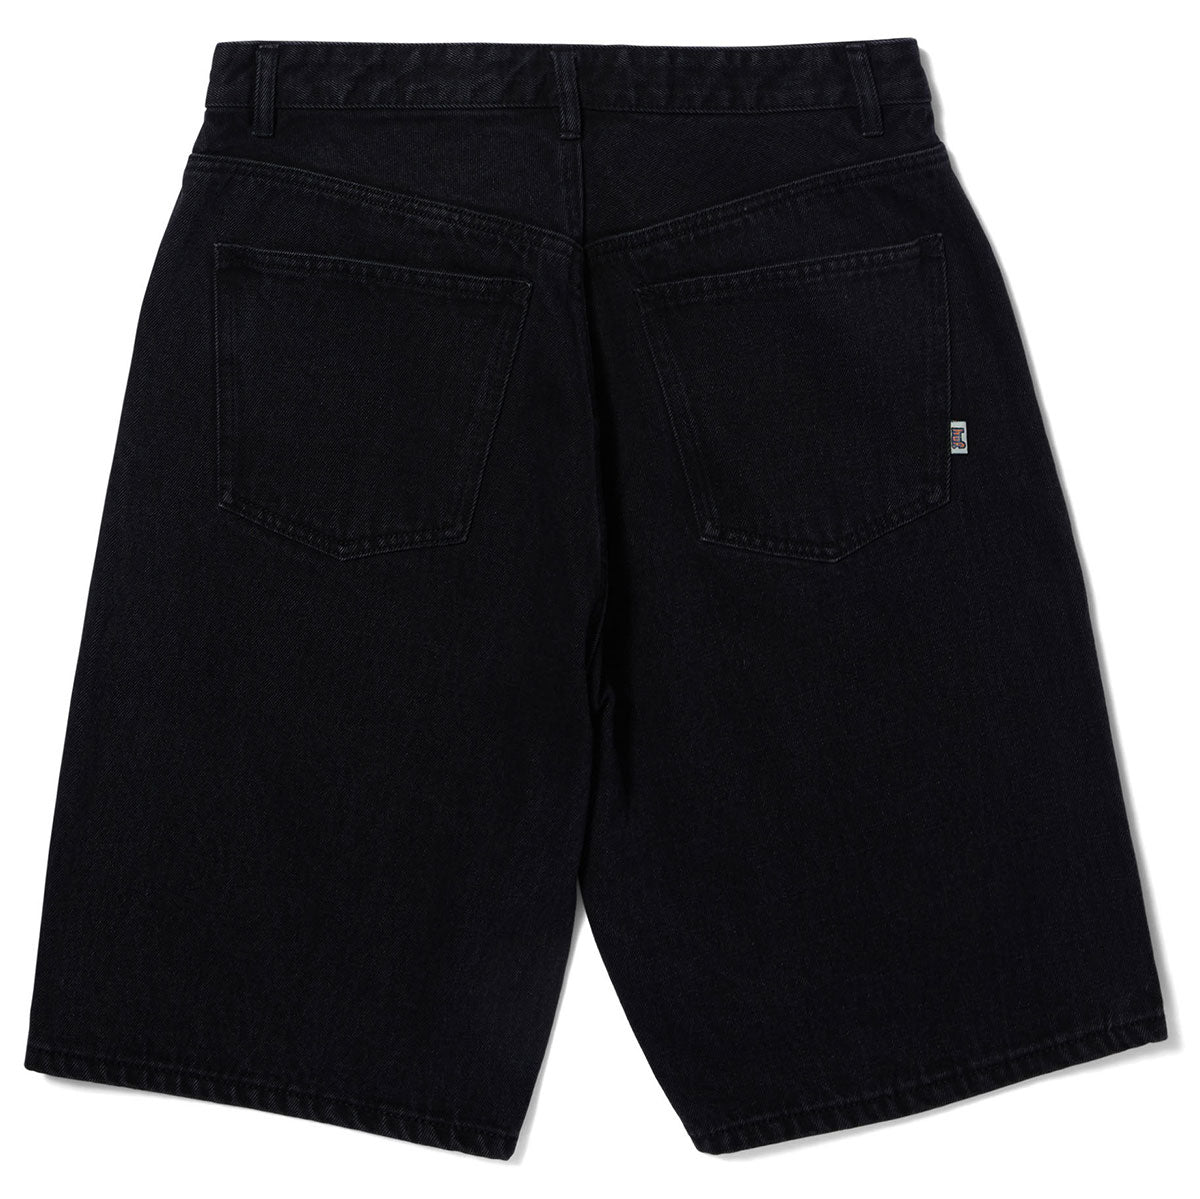 HUF Cromer Shorts - Washed Black image 2